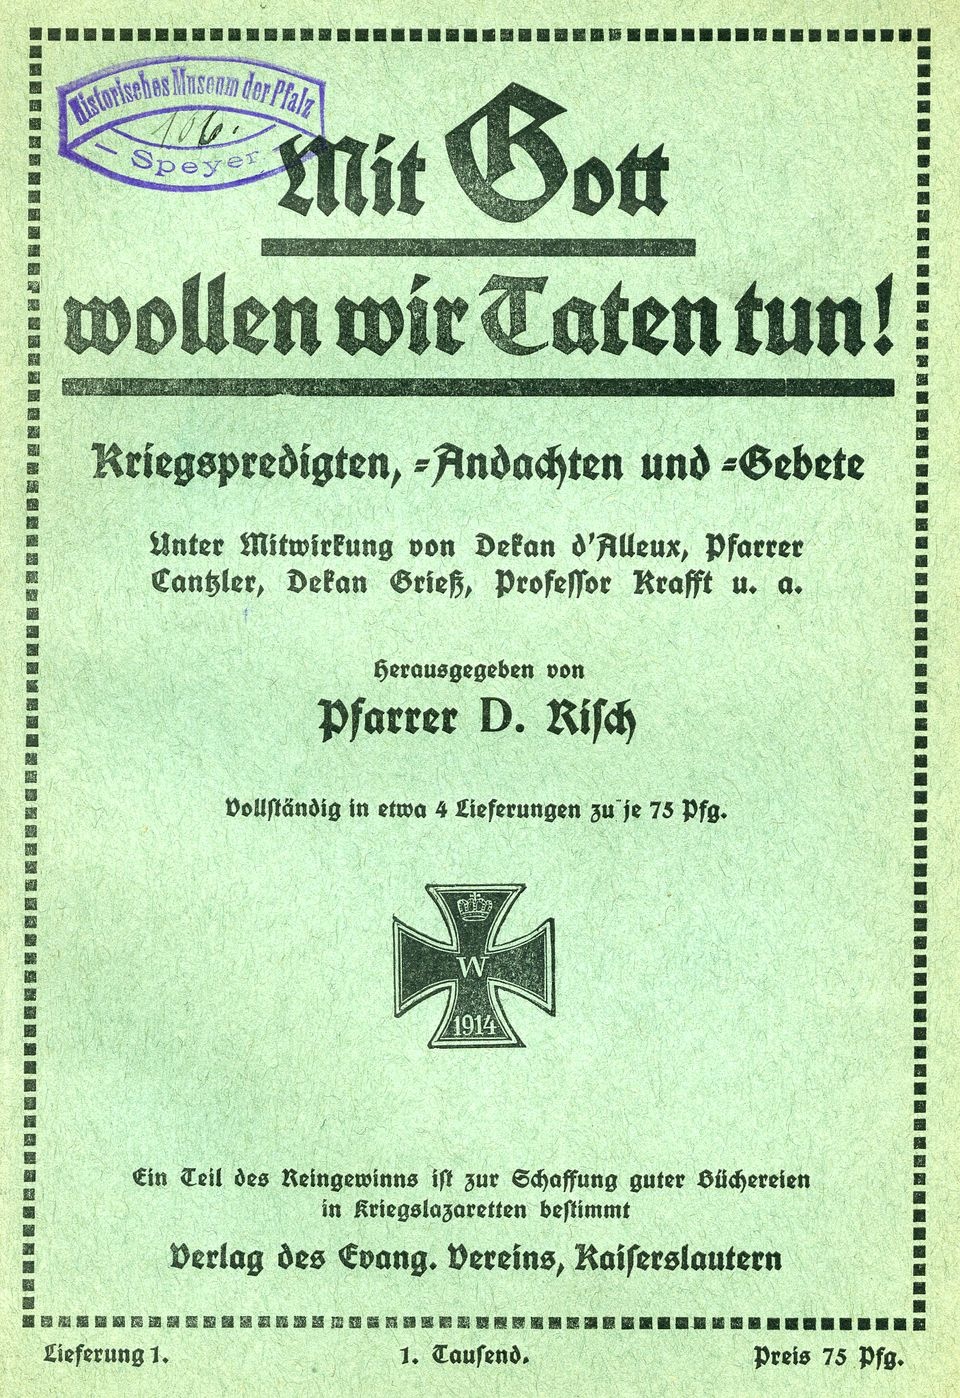 Sammelschrift Kriegspredigten, -andachten und -gebete  (Historisches Museum der Pfalz, Speyer CC BY)